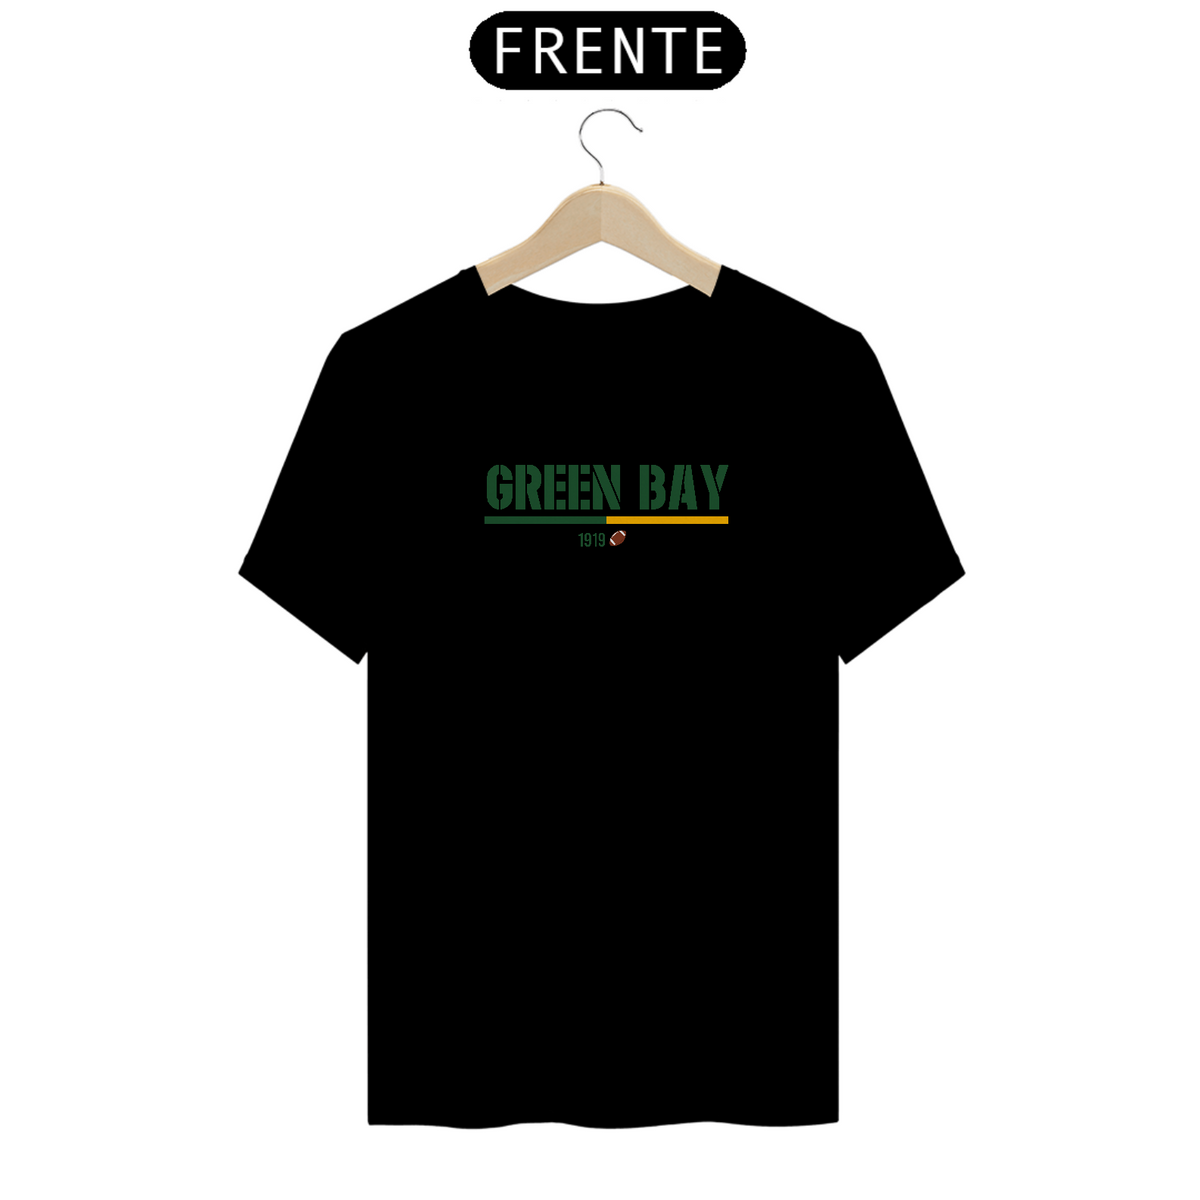 Nome do produto: Camiseta Prime Green Bay 1919